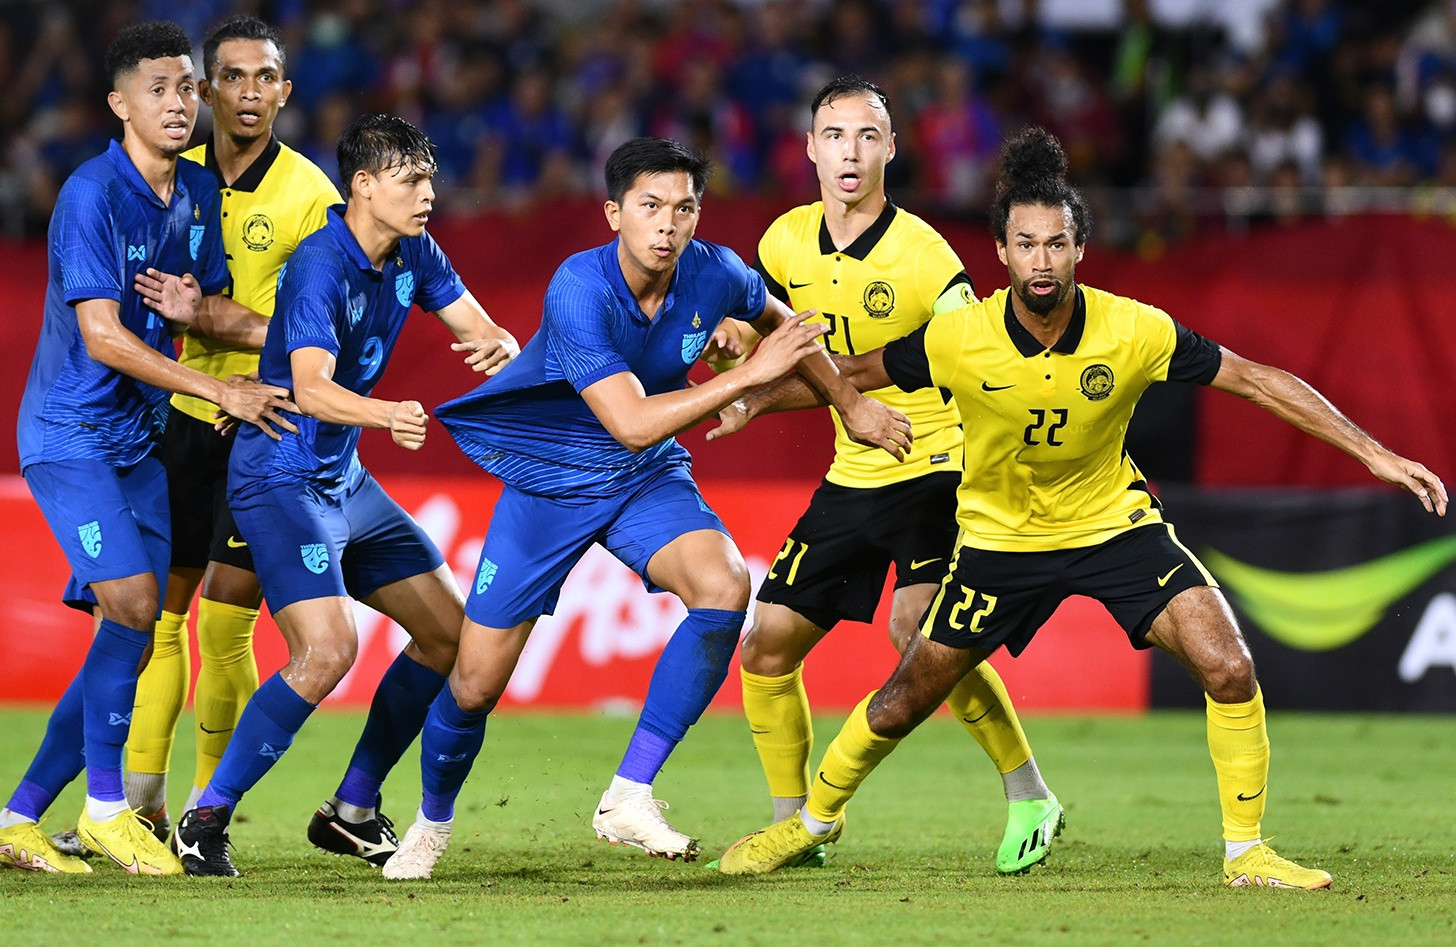 Hoà Indonesia 0-0, tuyển Việt Nam bất lợi lượt về bán kết AFF Cup - Bóng Đá